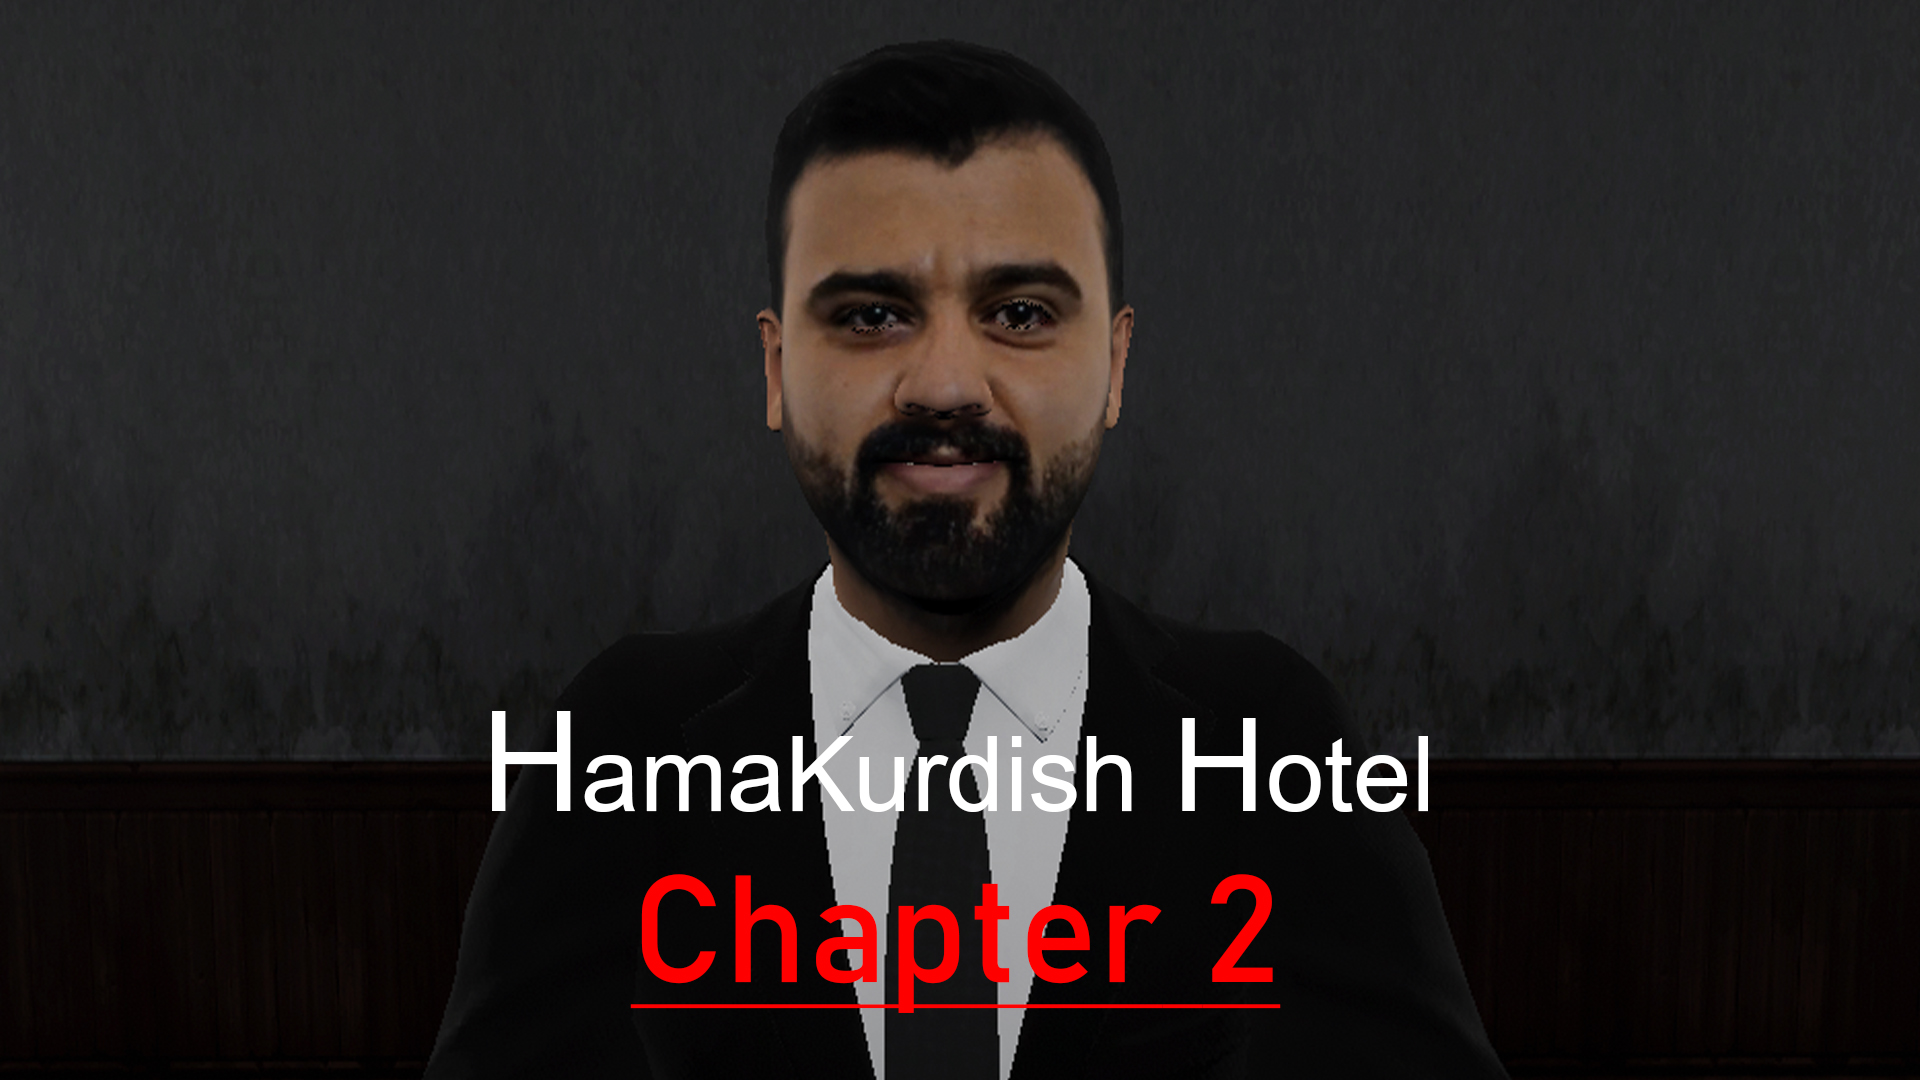 HamaKurdish Hotel | Chapter 2